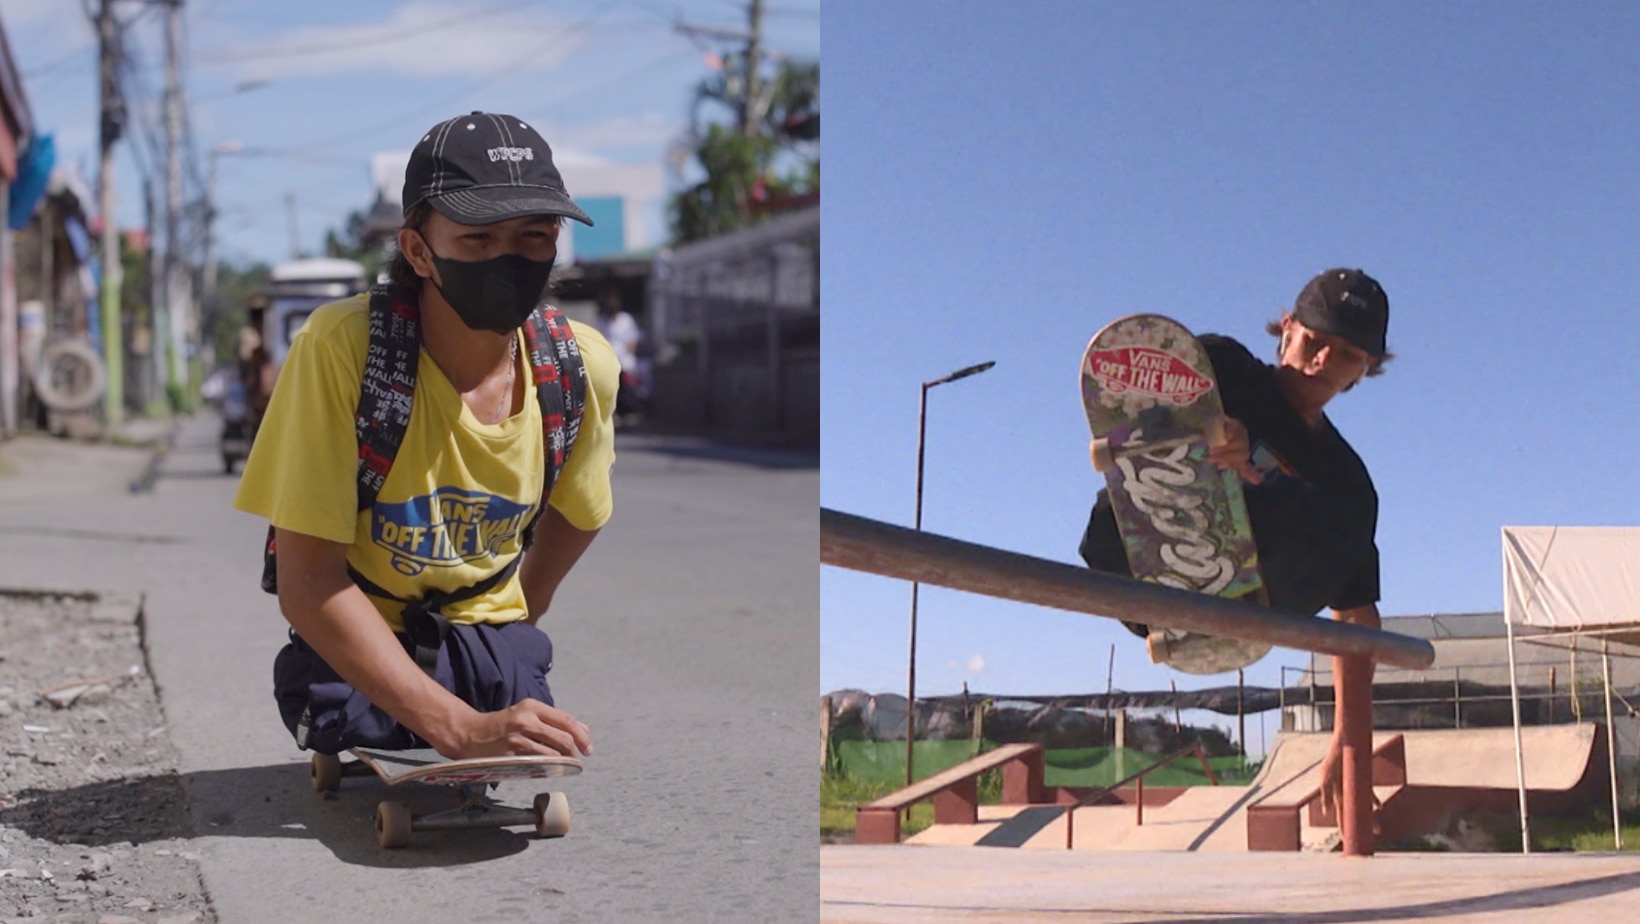  Teen born without legs do skateboarding in Noli's 